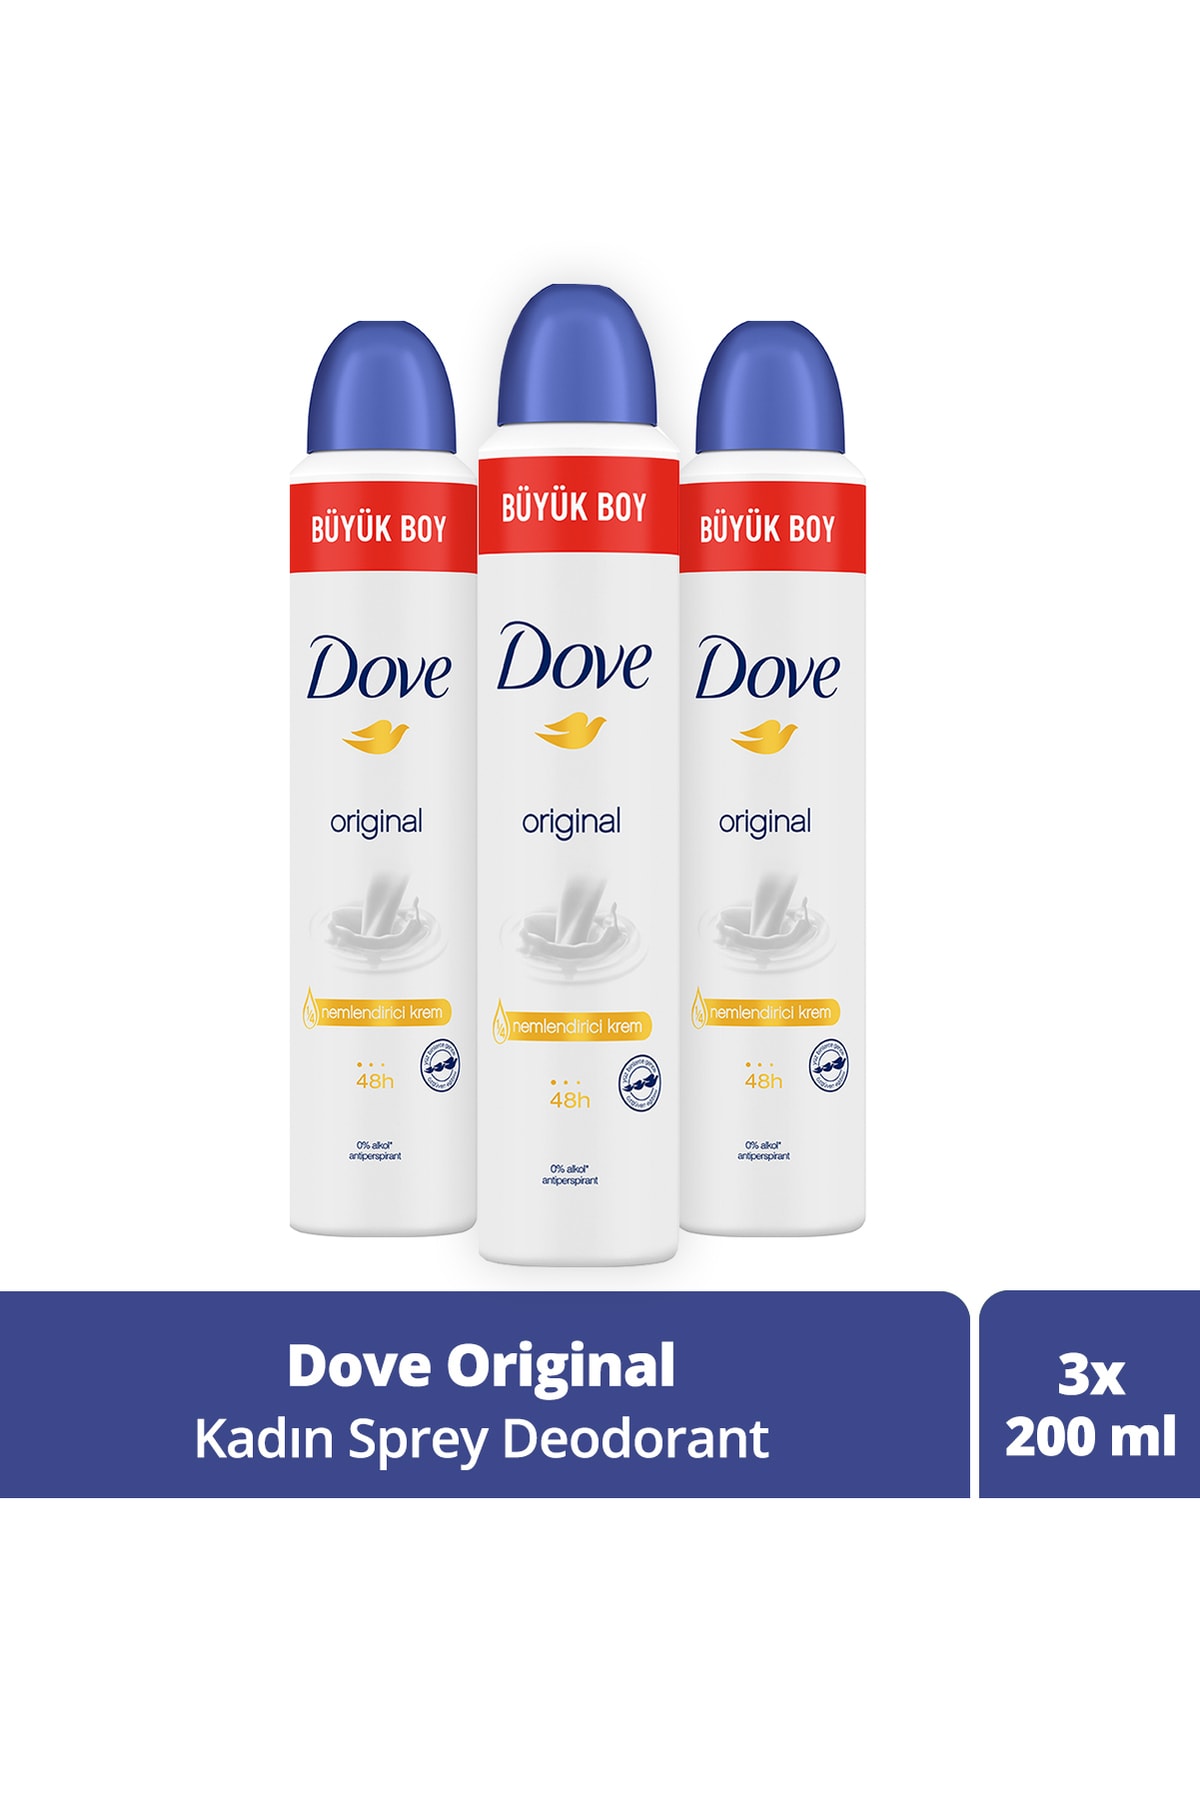 Dove Kadın Sprey Deodorant Original 1/4 Nemlendirici Krem Etkili Büyük Boy 200 Ml X3 Adet